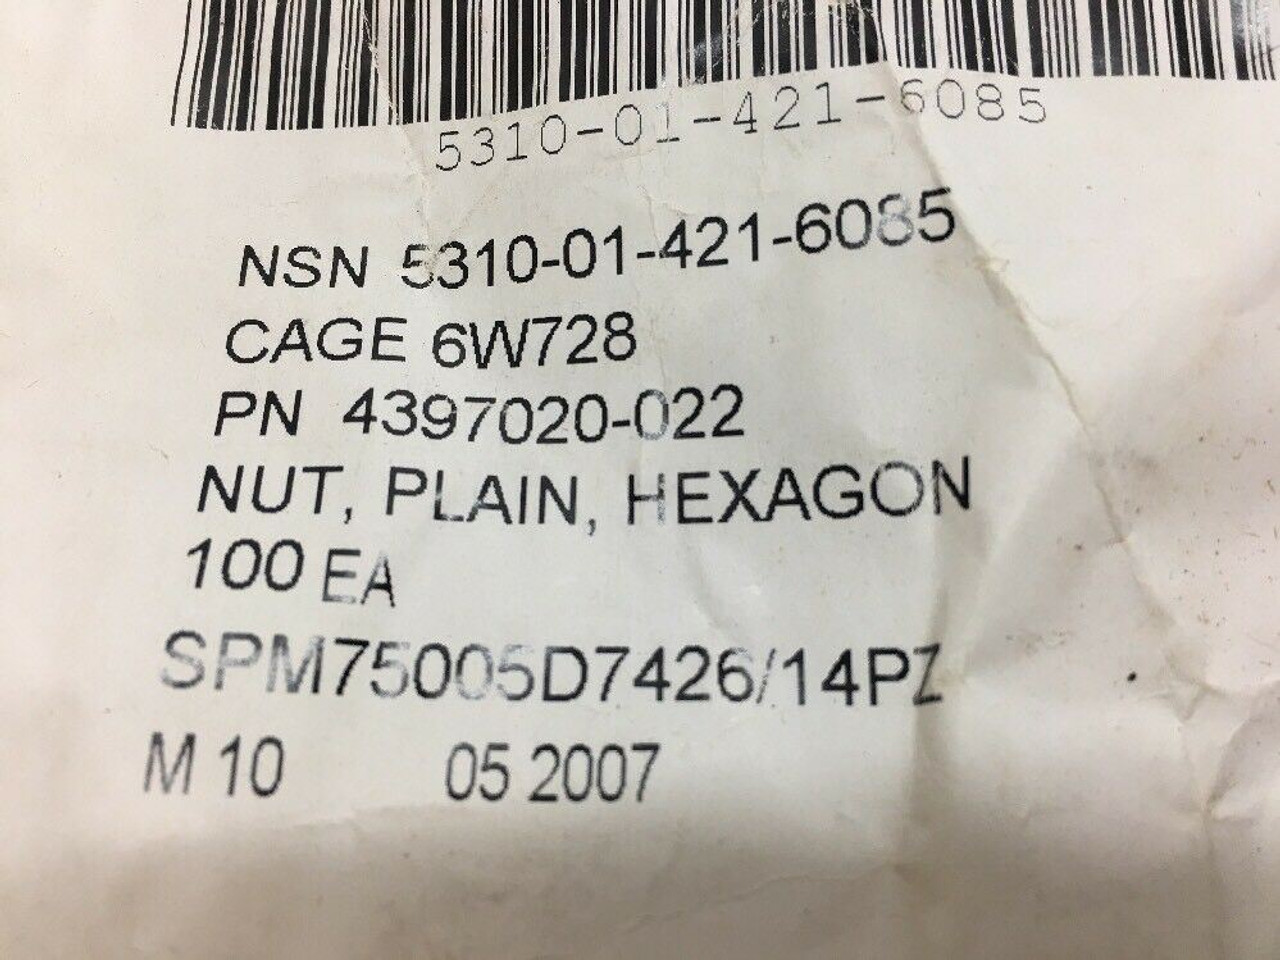 BAE Systems Survivability Systems Hexagon Plain Nut (100 Each) 4397020-022